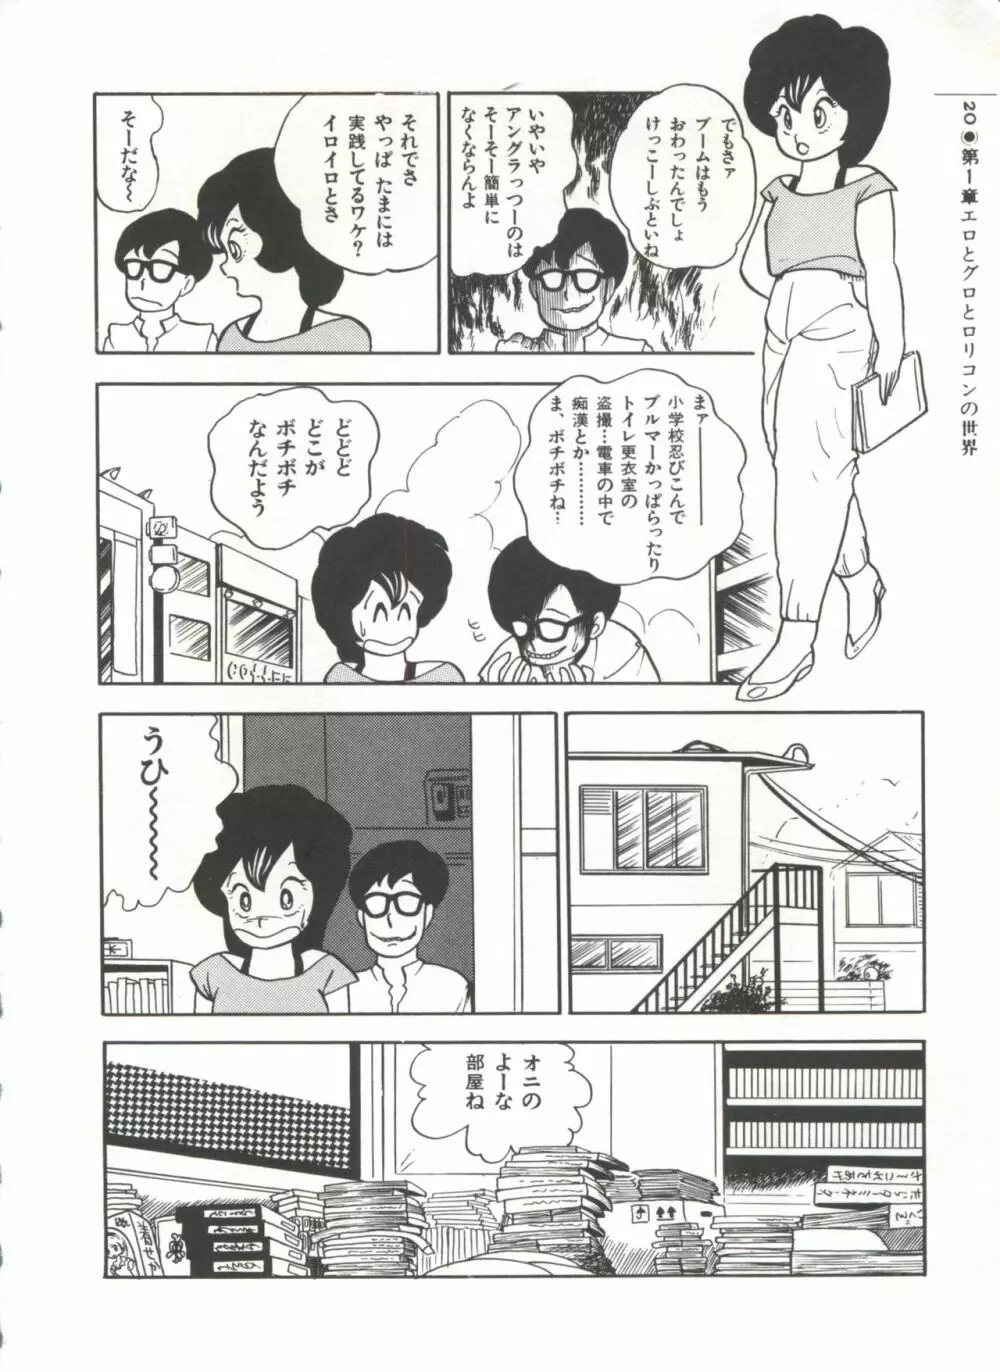 [Anthology] 美少女症候群(2) Lolita syndrome (よろず) 23ページ